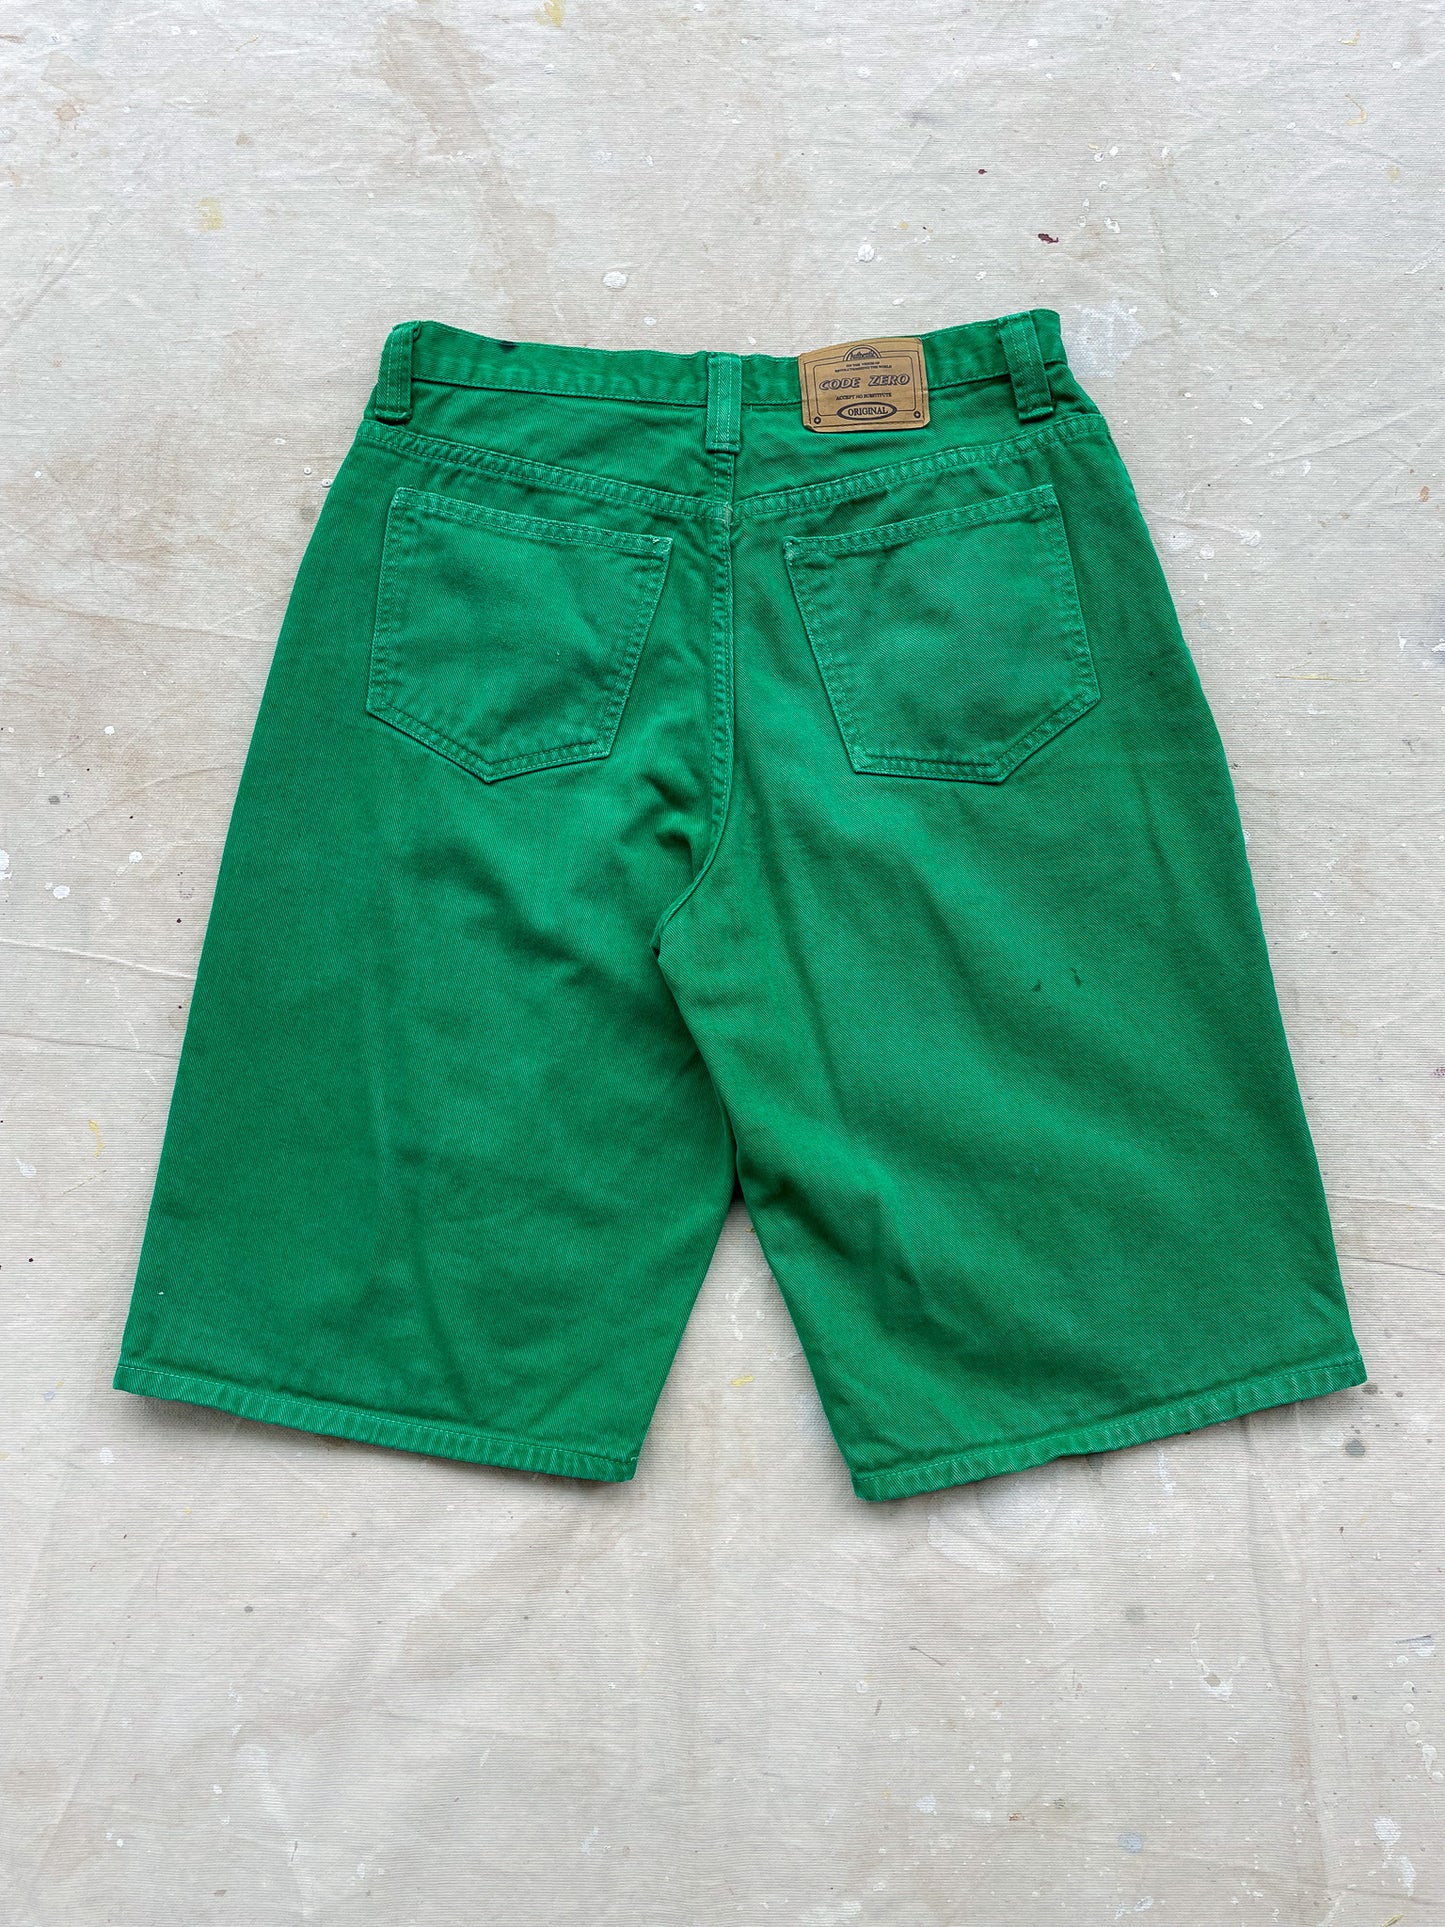 Green Jean Shorts—[32]